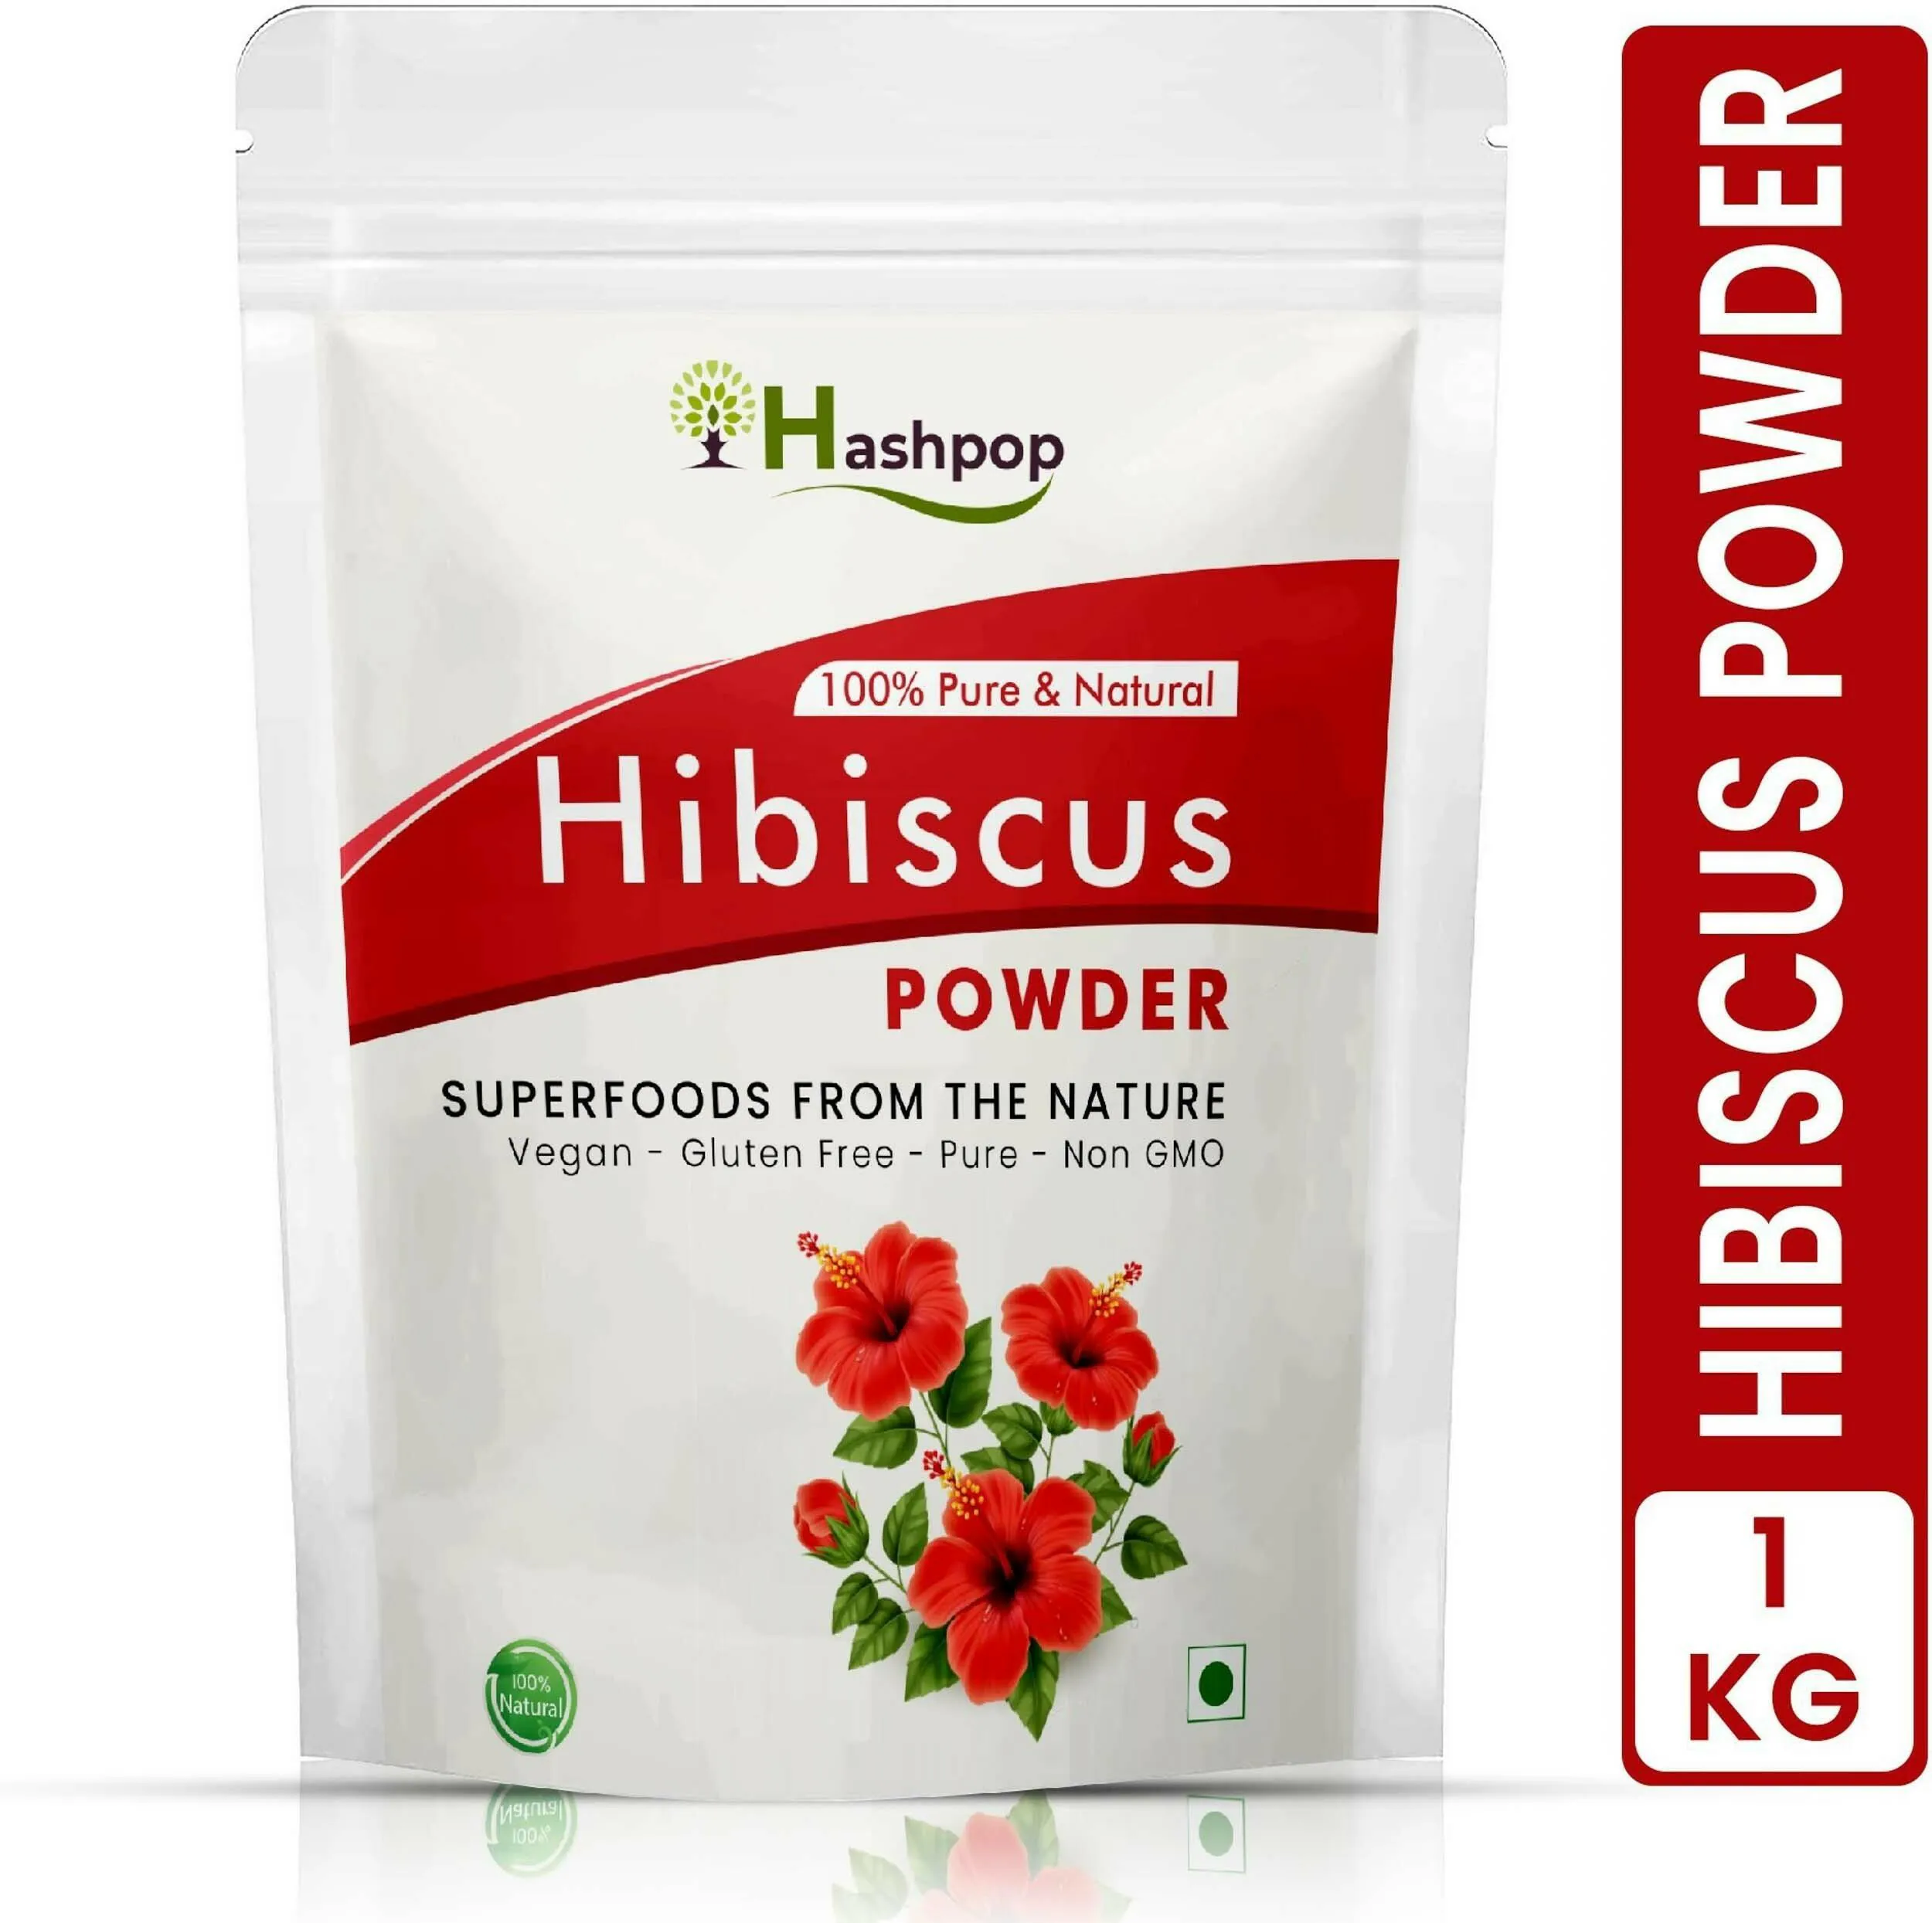 Hashpop Hibiscus Flower Powder For Natural Hair Growth - 1Kg - JioMart